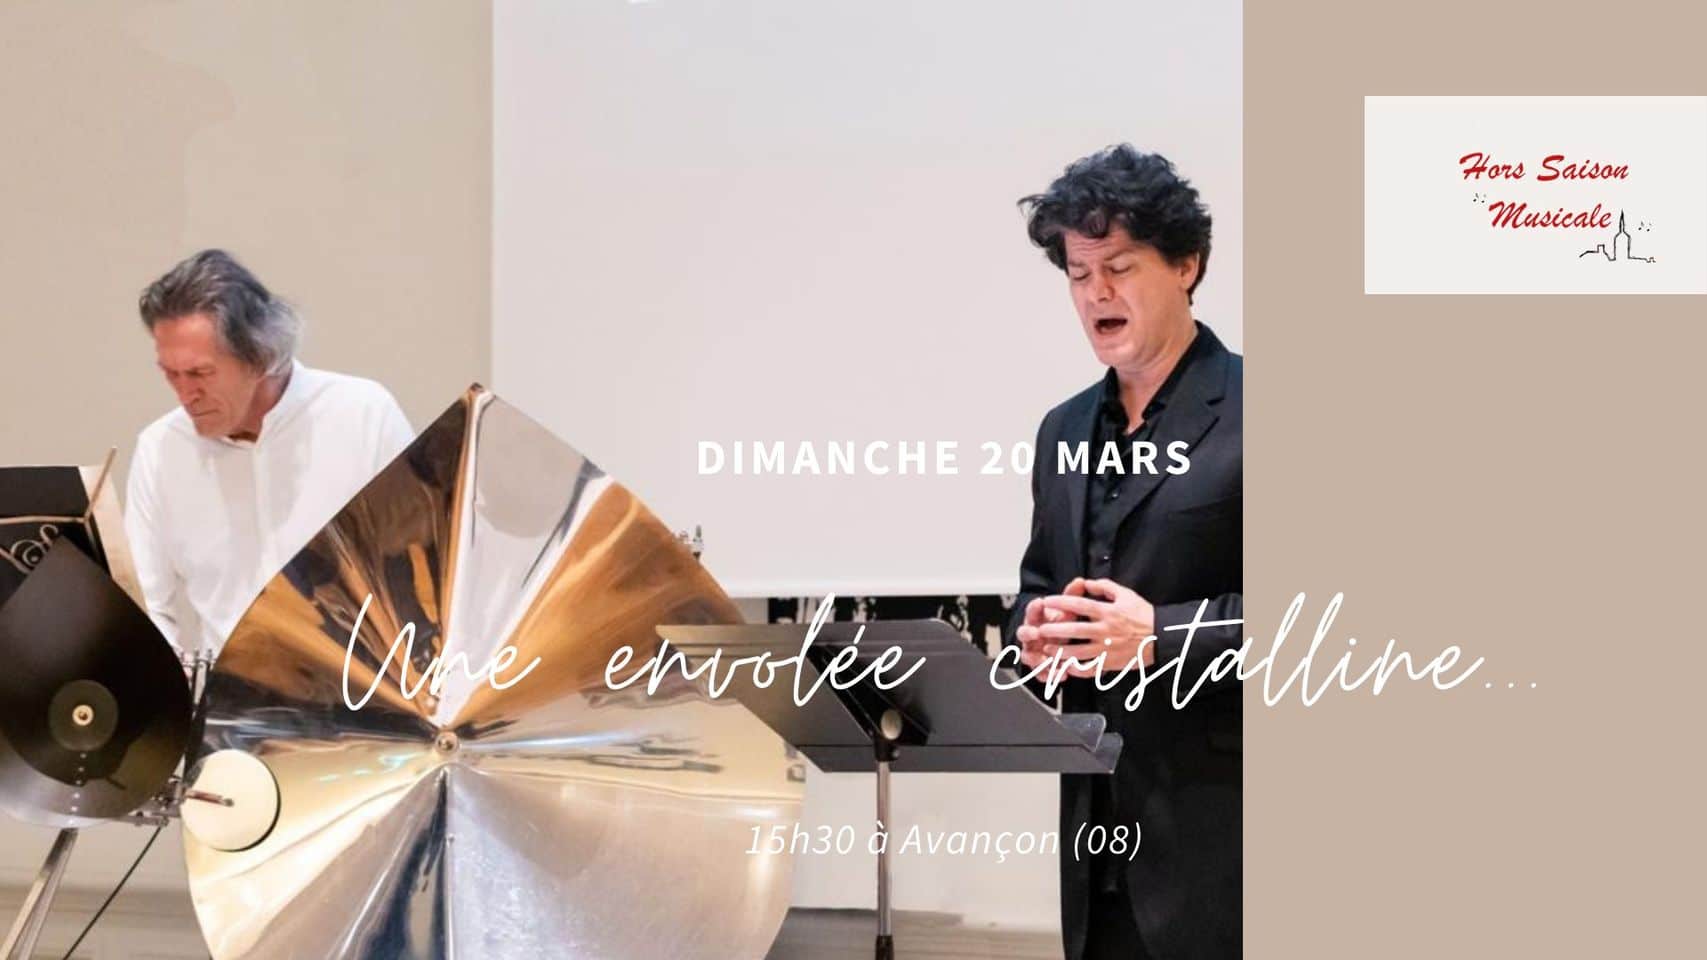 You are currently viewing Cristal Duet à Avançon avec Hors Saison Musicale